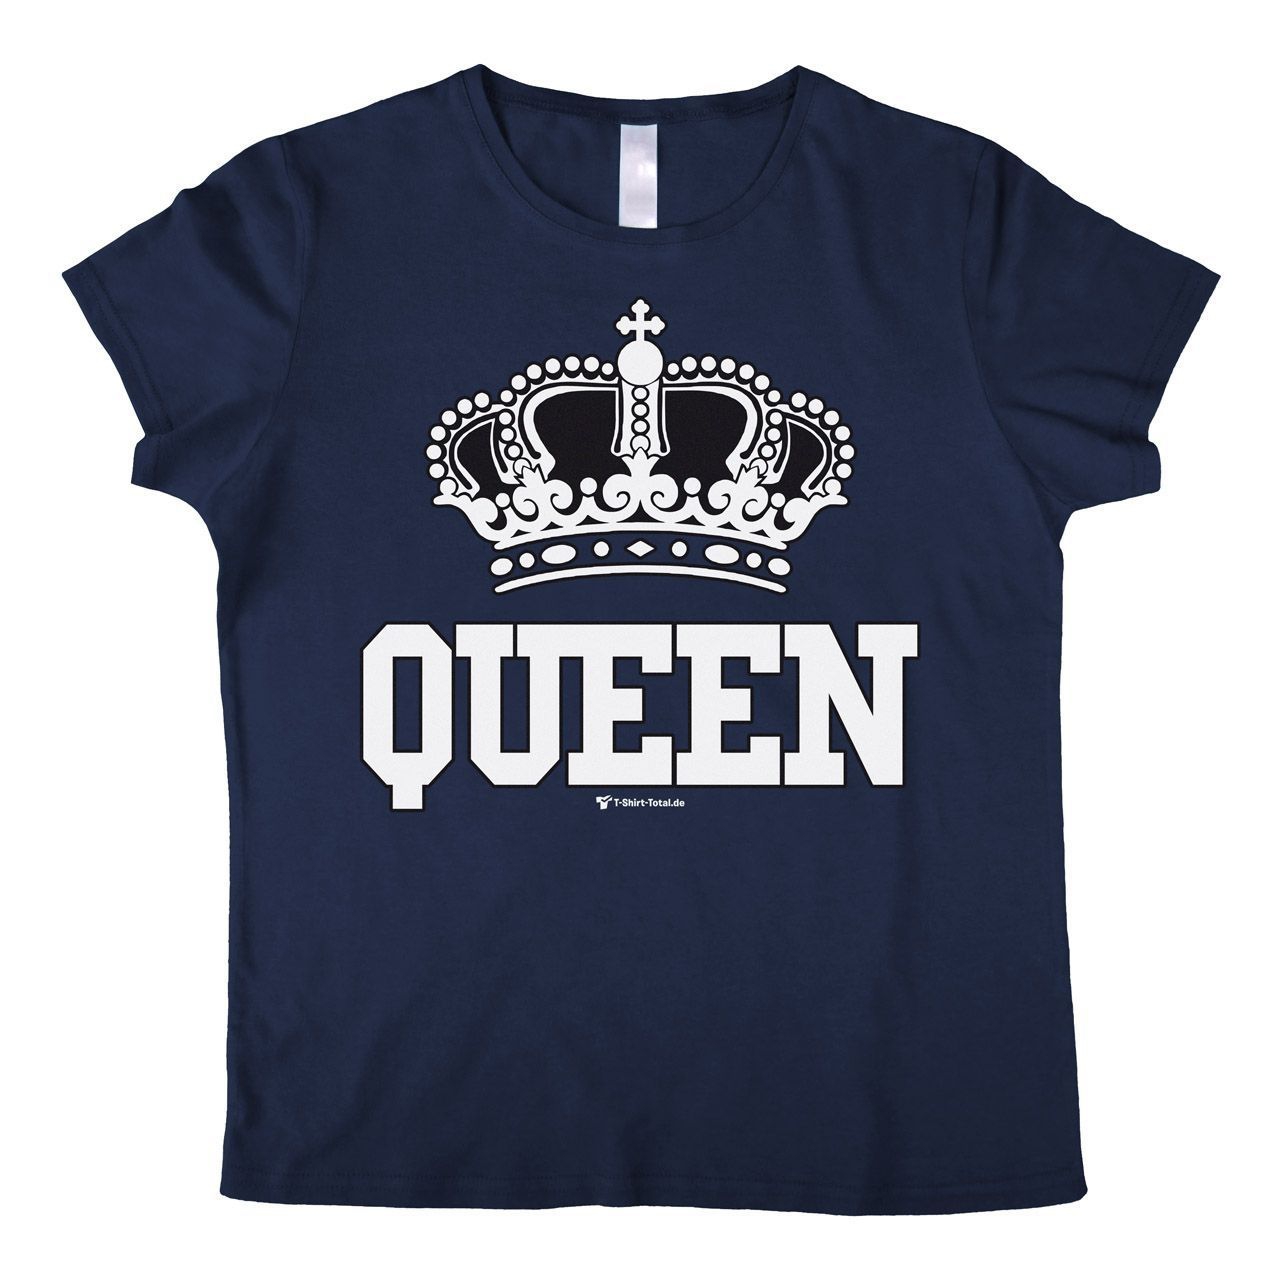 Queen Woman T-Shirt navy Medium